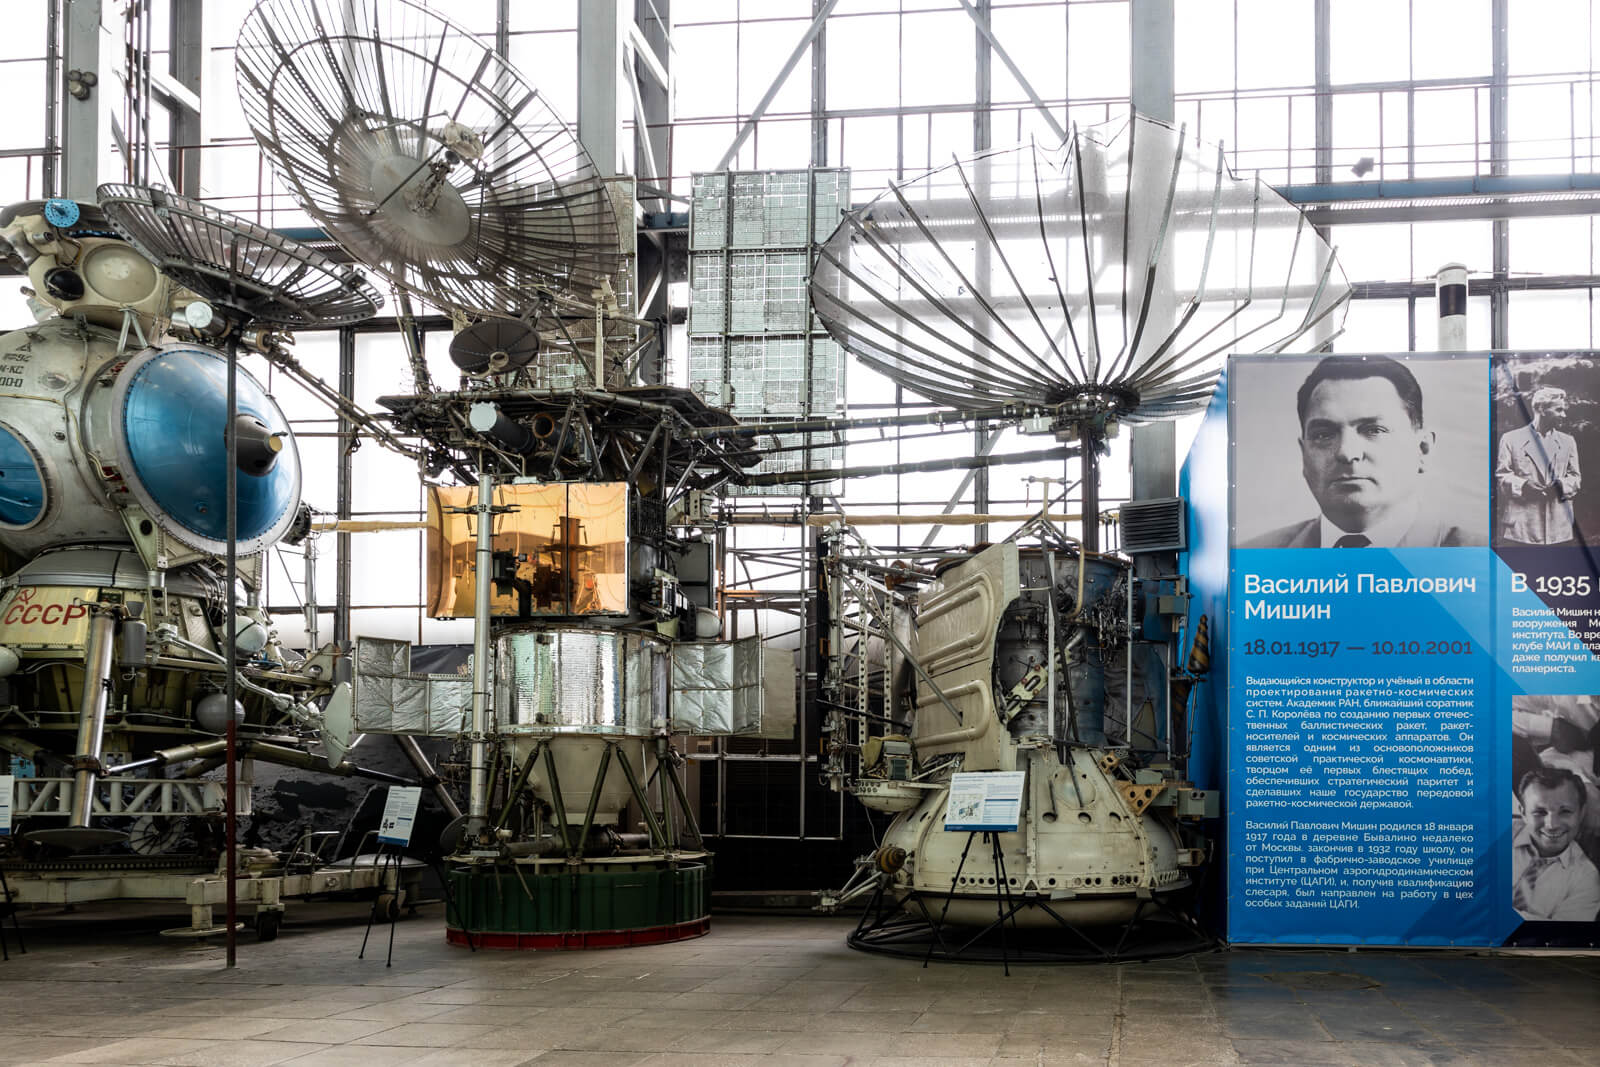 В Центре космонавтики им. академика В. П. Мишина представлены настоящие космические аппараты и фрагменты ракетных комплексов.